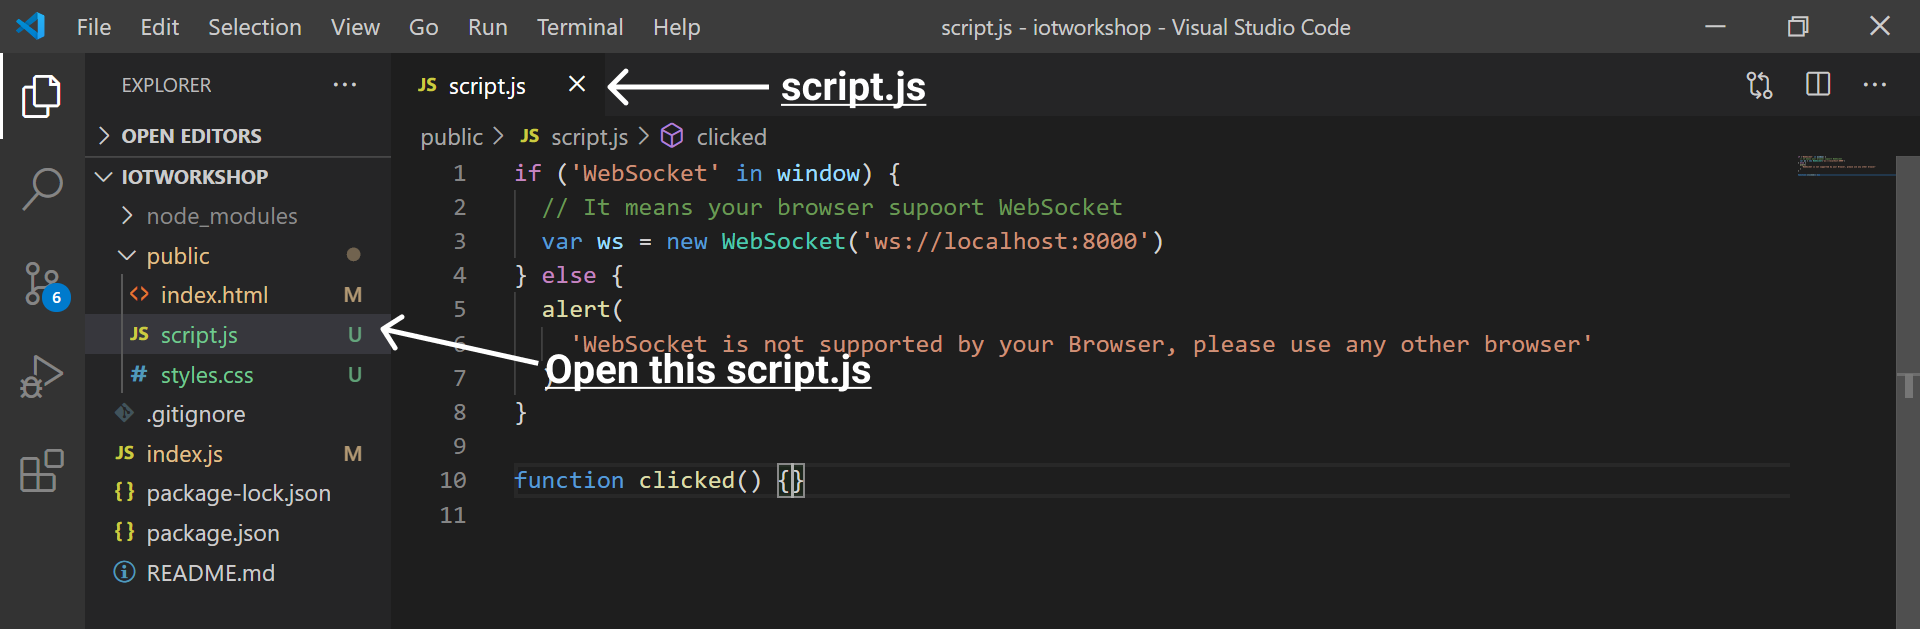 script js file image